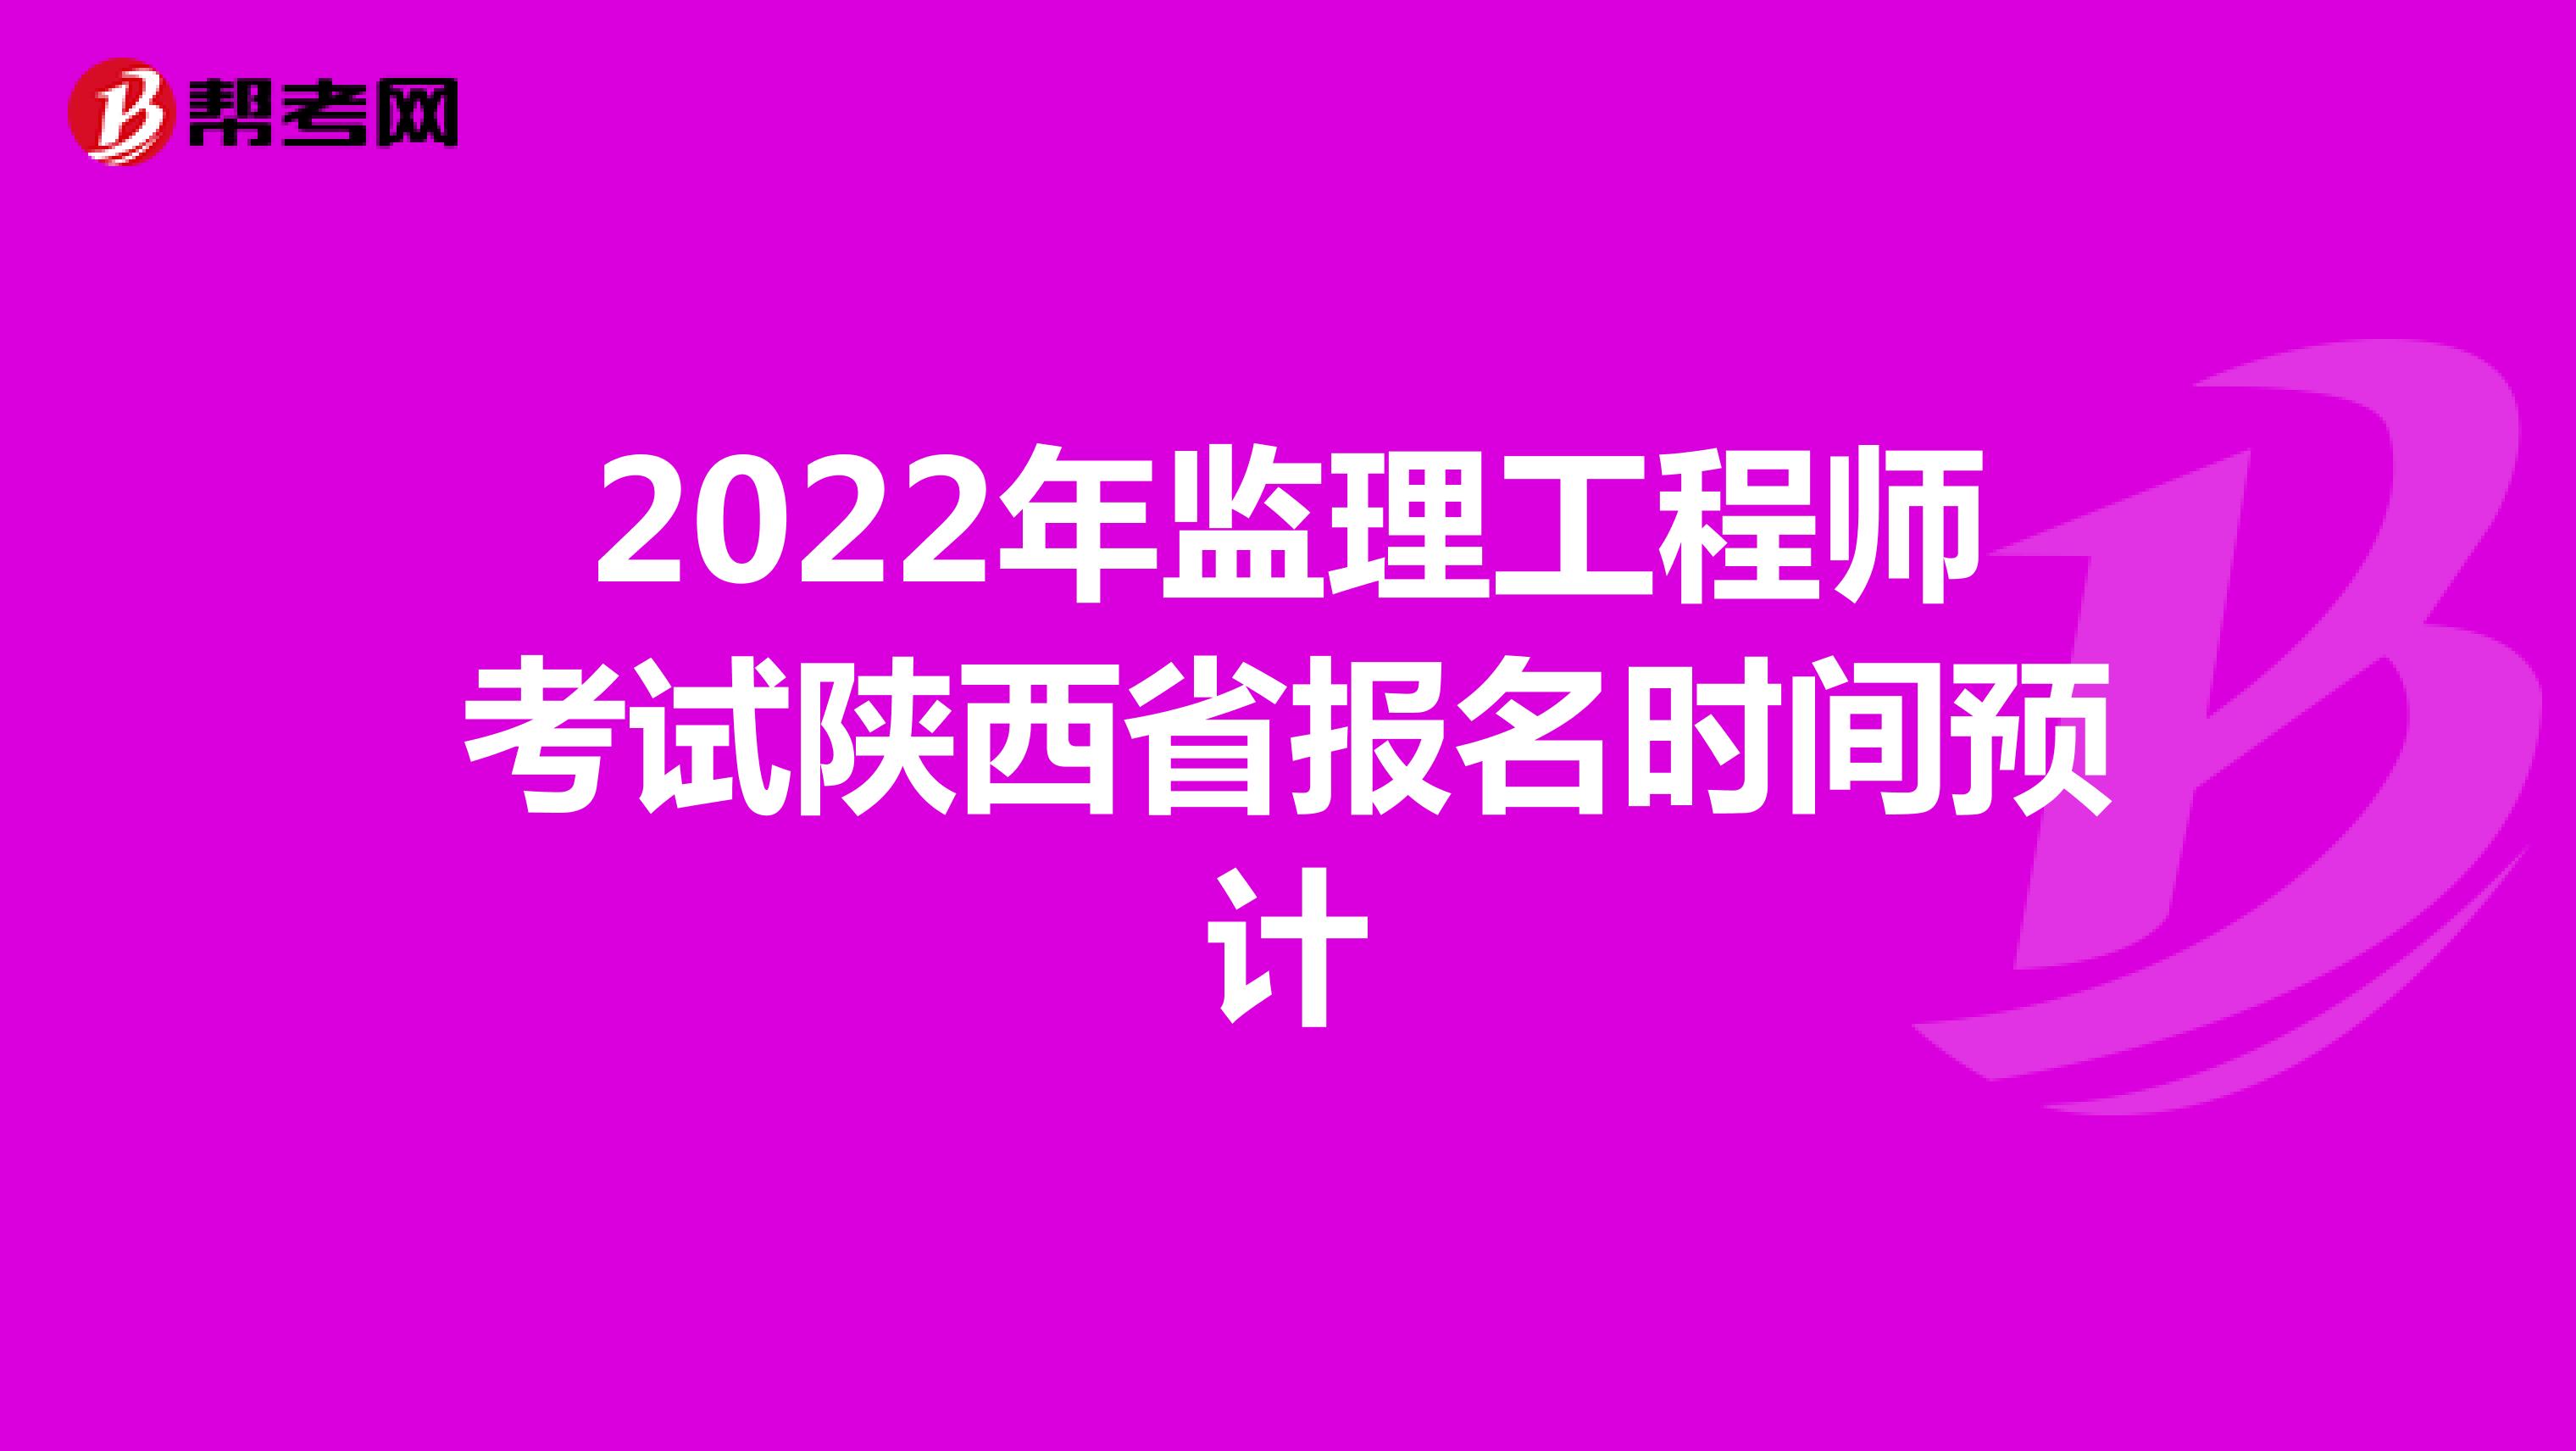 2022年监理工程师考试陕西省报名时间预计